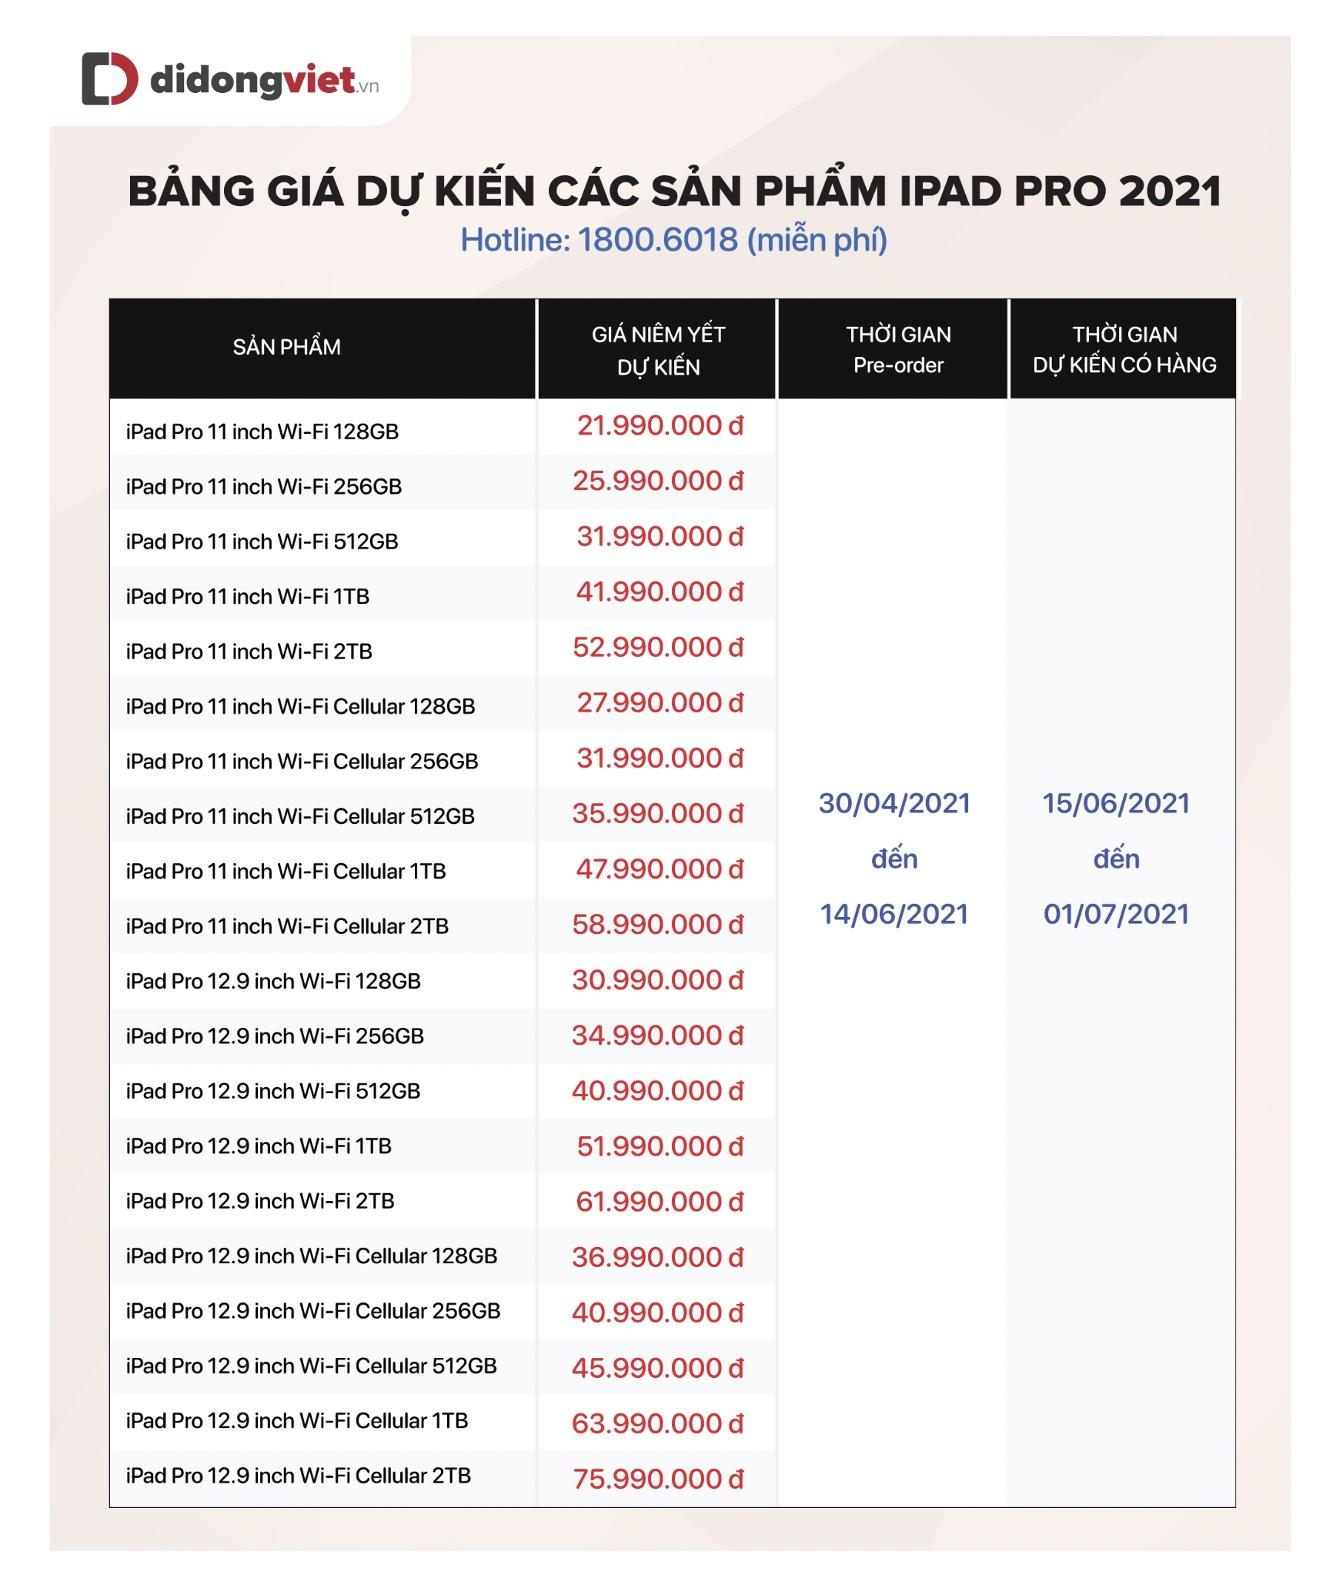 iPad Pro 2021, iMac, Apple TV và AirTag sẽ có giá bao nhiêu? Khi về Việt Nam?